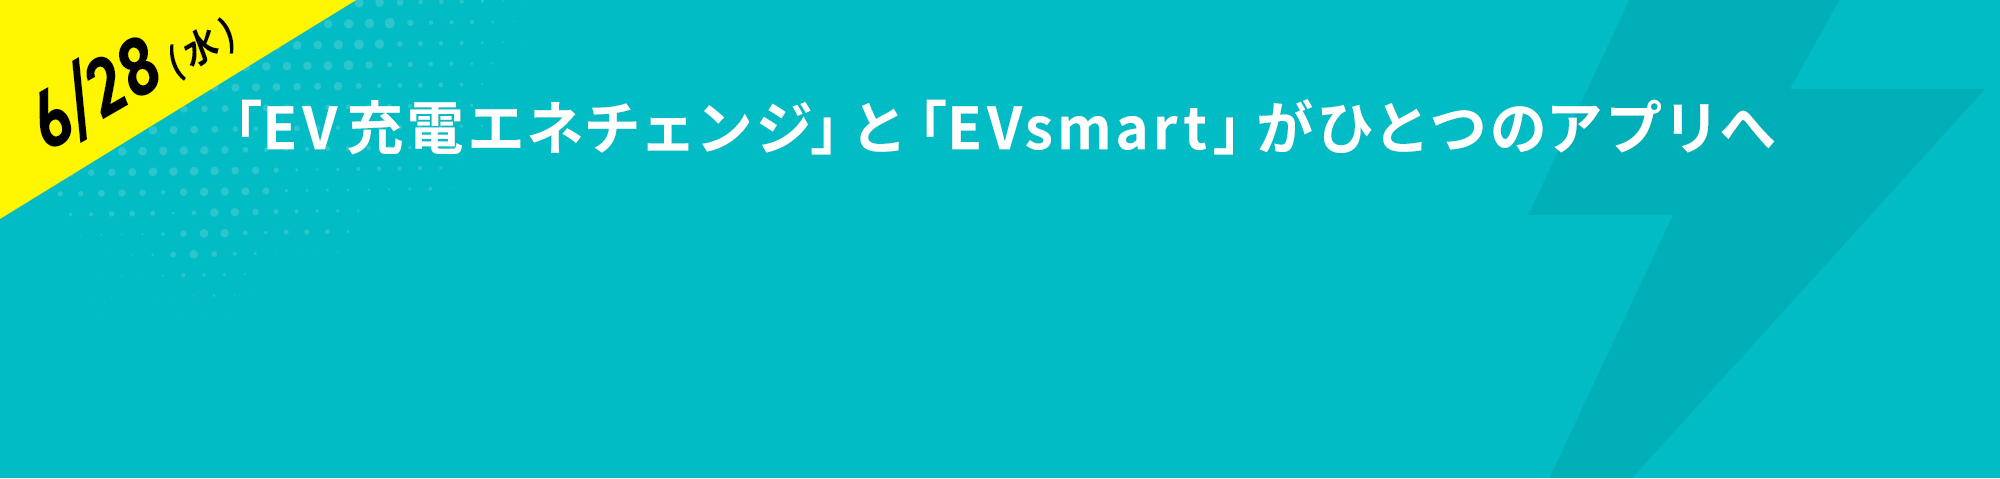 「EV充電エネチェンジ」と「EVsmart」がひとつのアプリへ